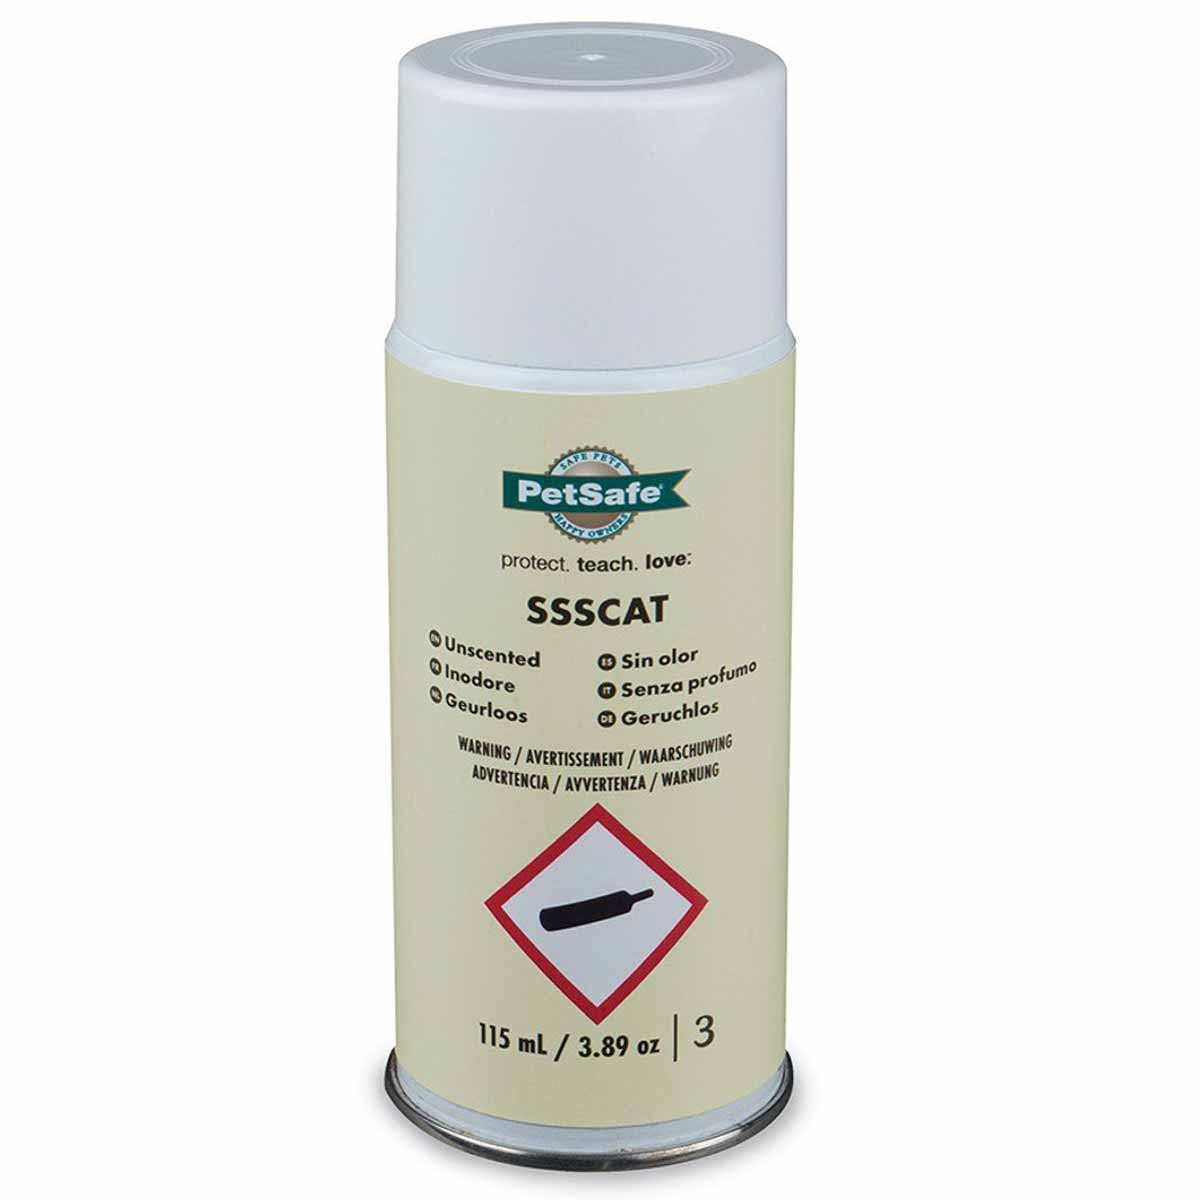 PetSafe Spray Deterrent Refill Can 115 ml